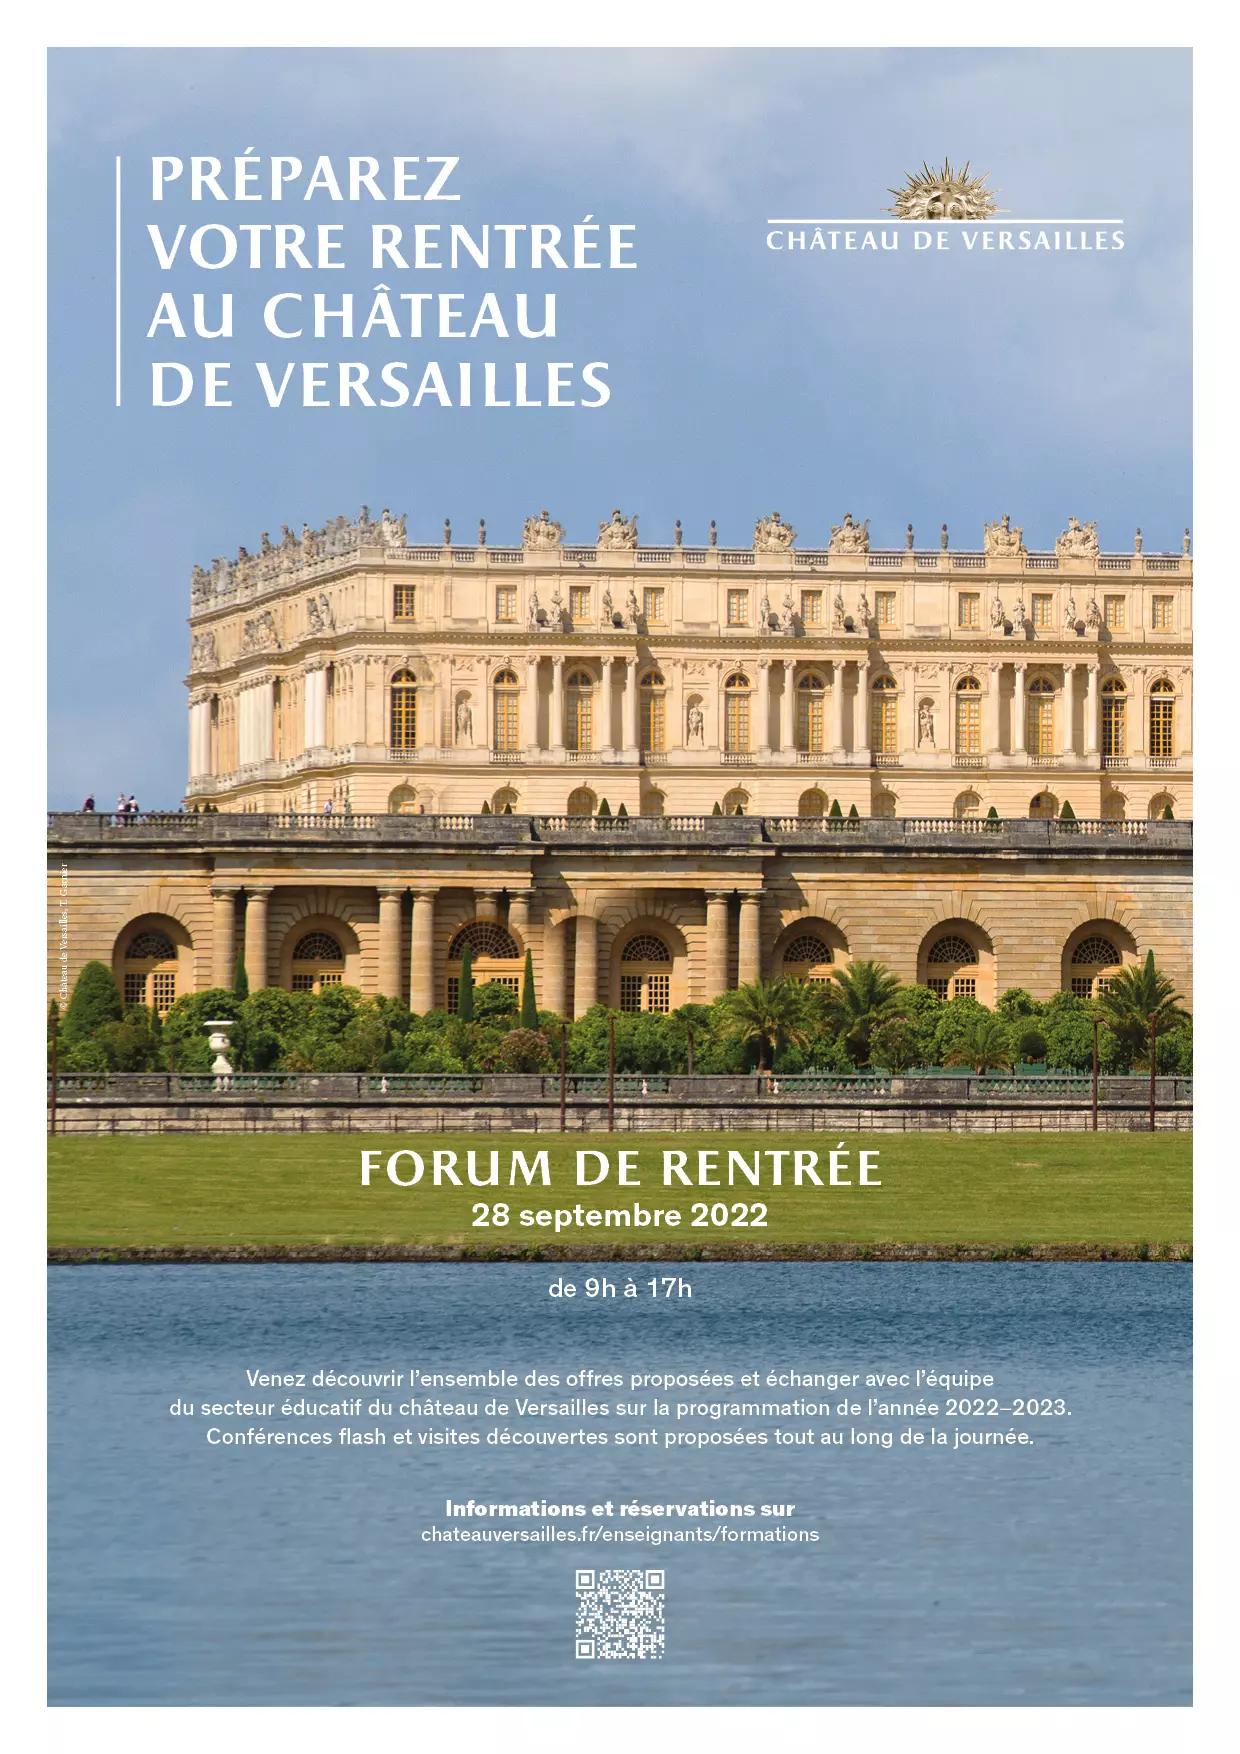 Promotions Ouvertures Projets-Crédits : Château de Versailles